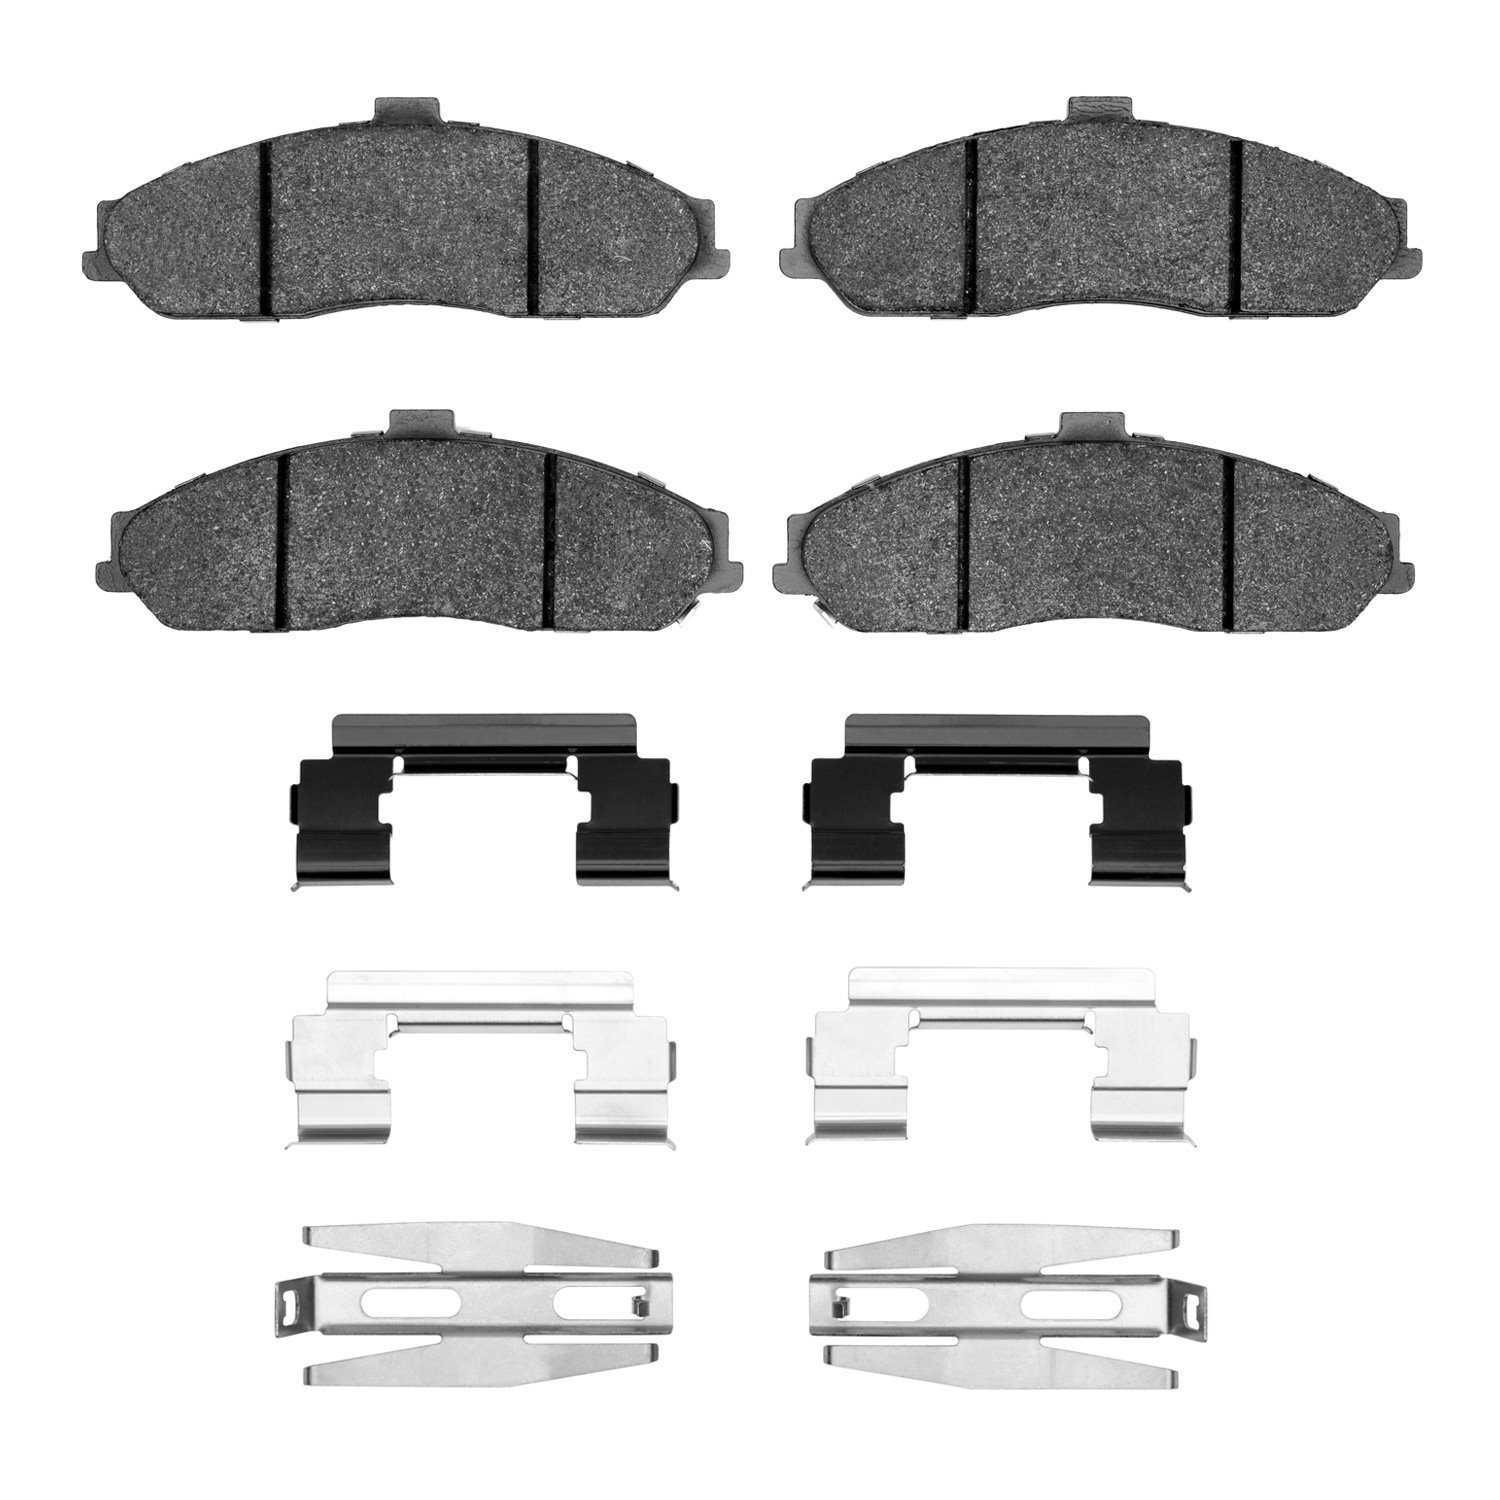 1310-0731-01 3000-Series Ceramic Brake Pads & Hardware Kit, 1997-2013 GM, Position: Front